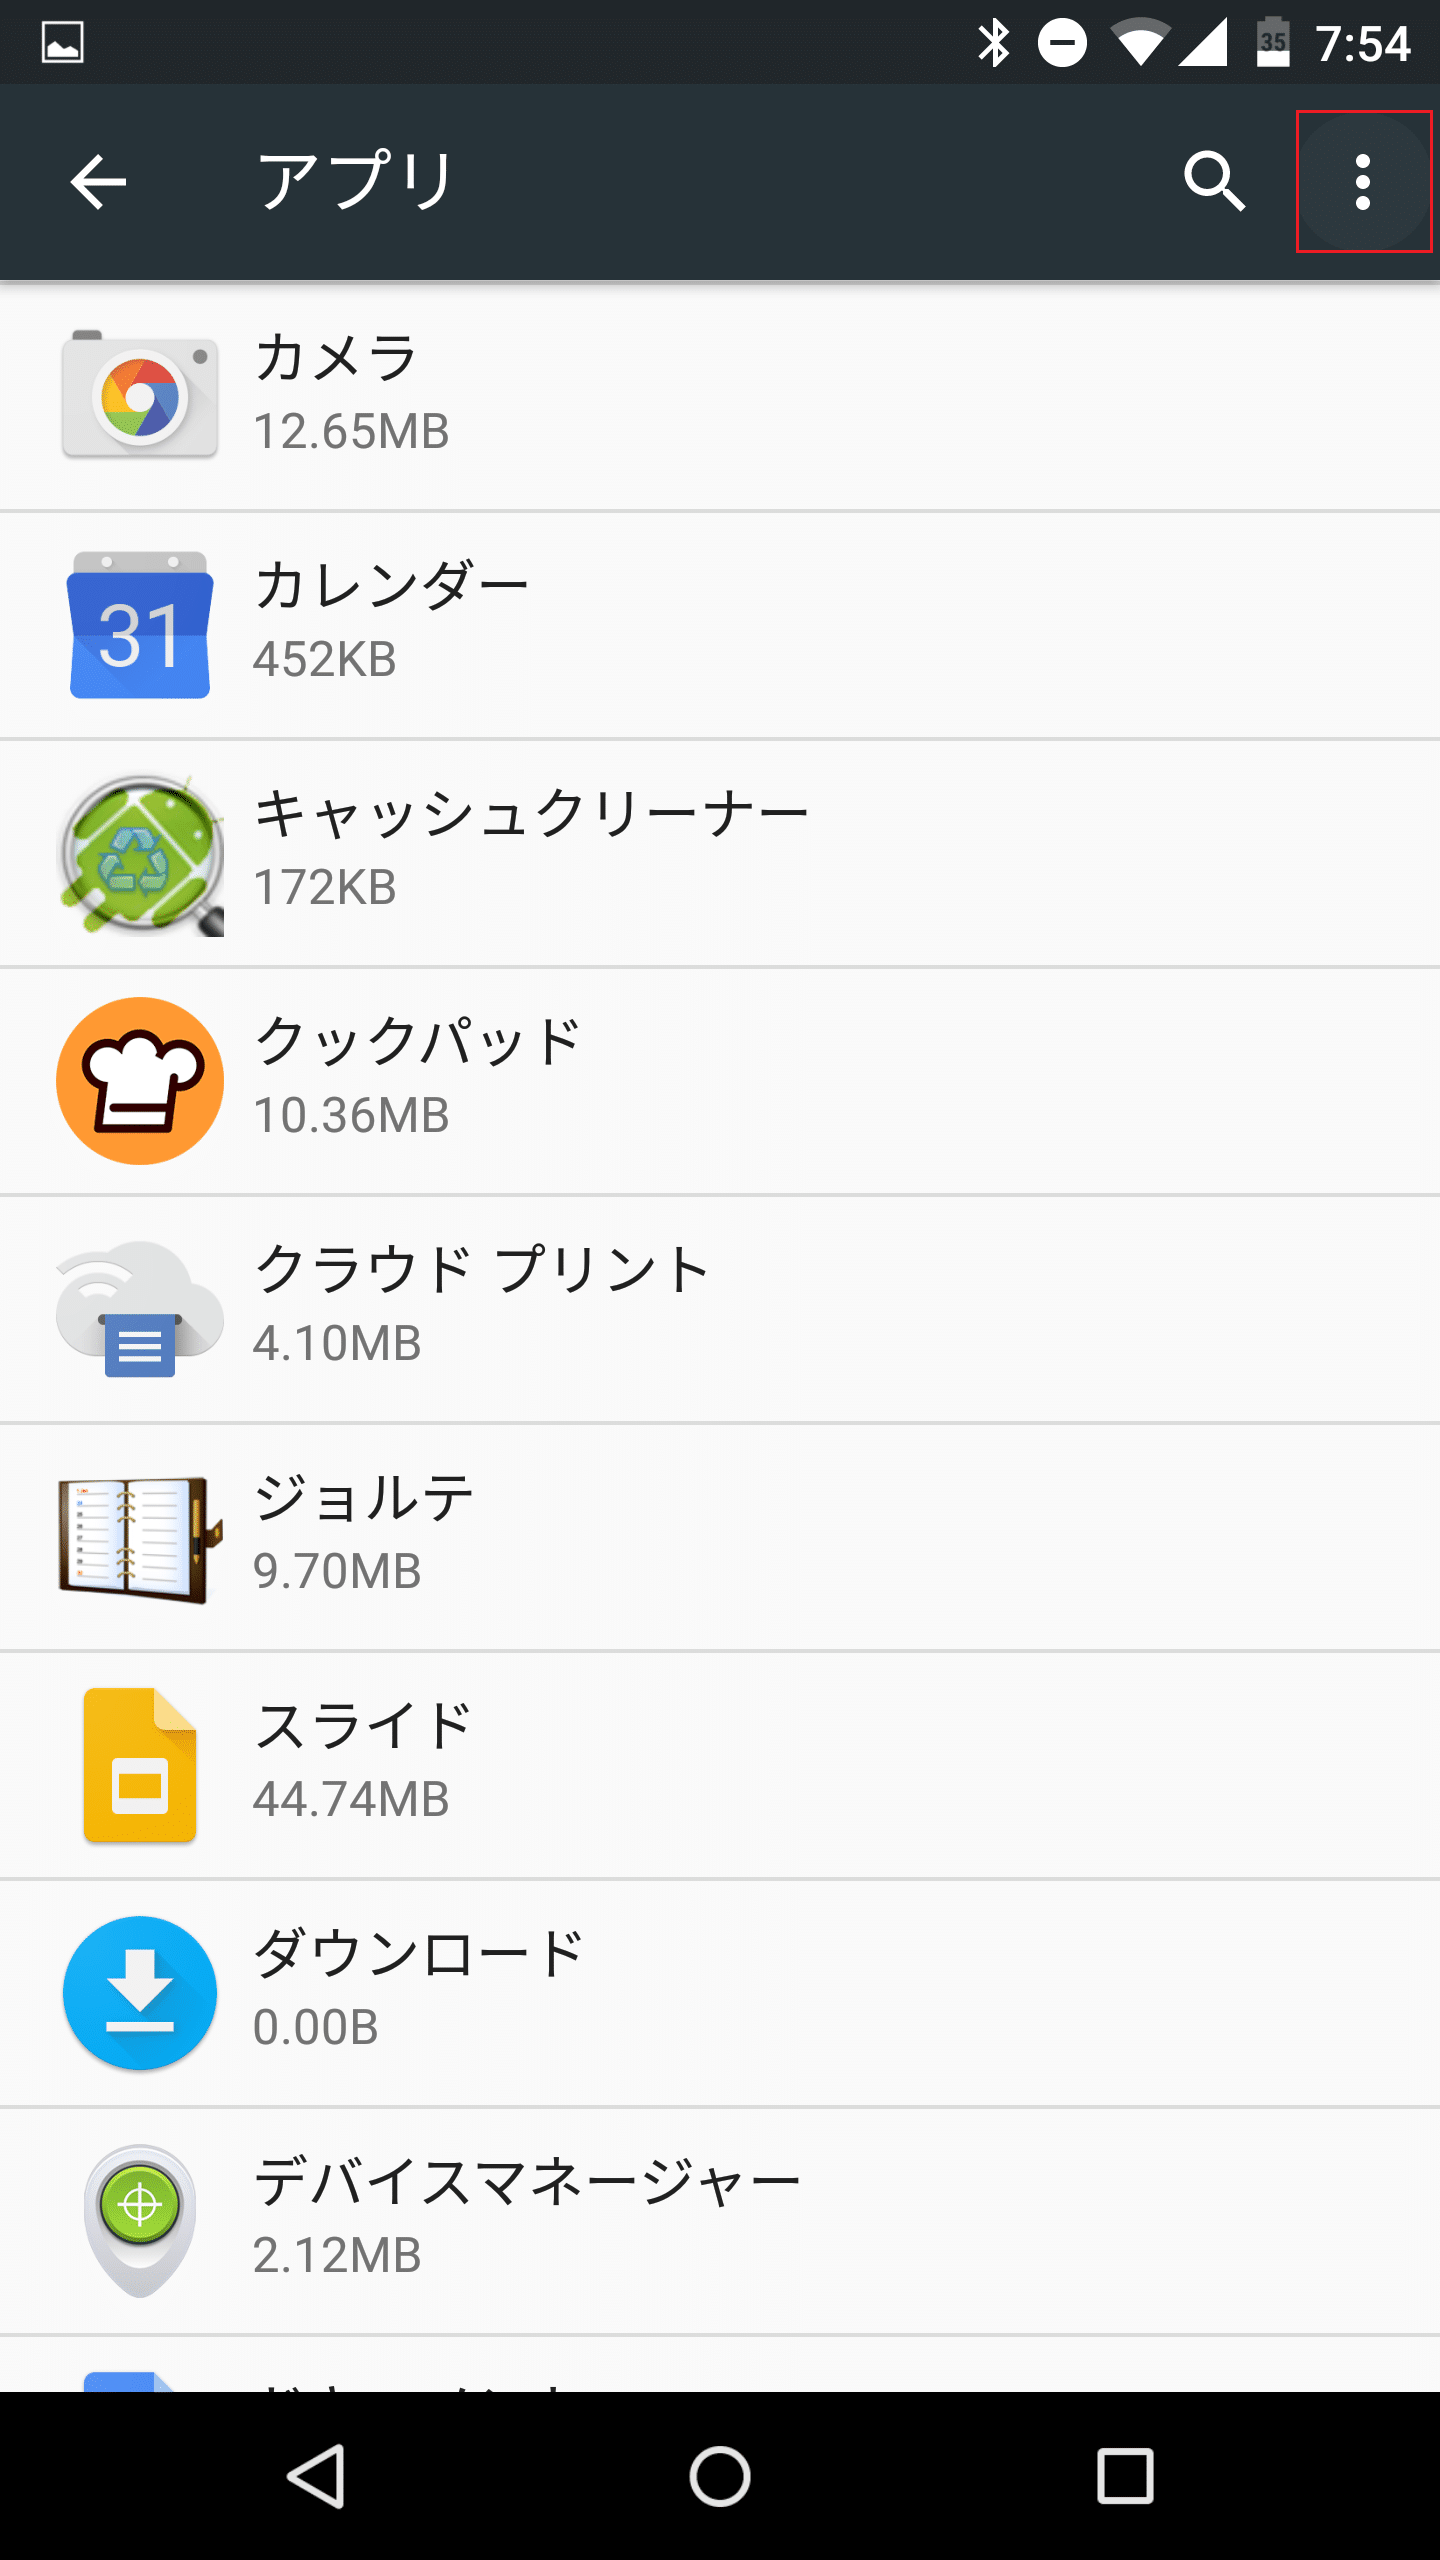 Android 6 0 Marshmallowではデフォルト設定したアプリの解除方法が 設定を消去 の他に ブラウザや電話など機能ごとにアプリ一覧から既定のアプリを選ぶ方法も追加 アンドロイドラバー